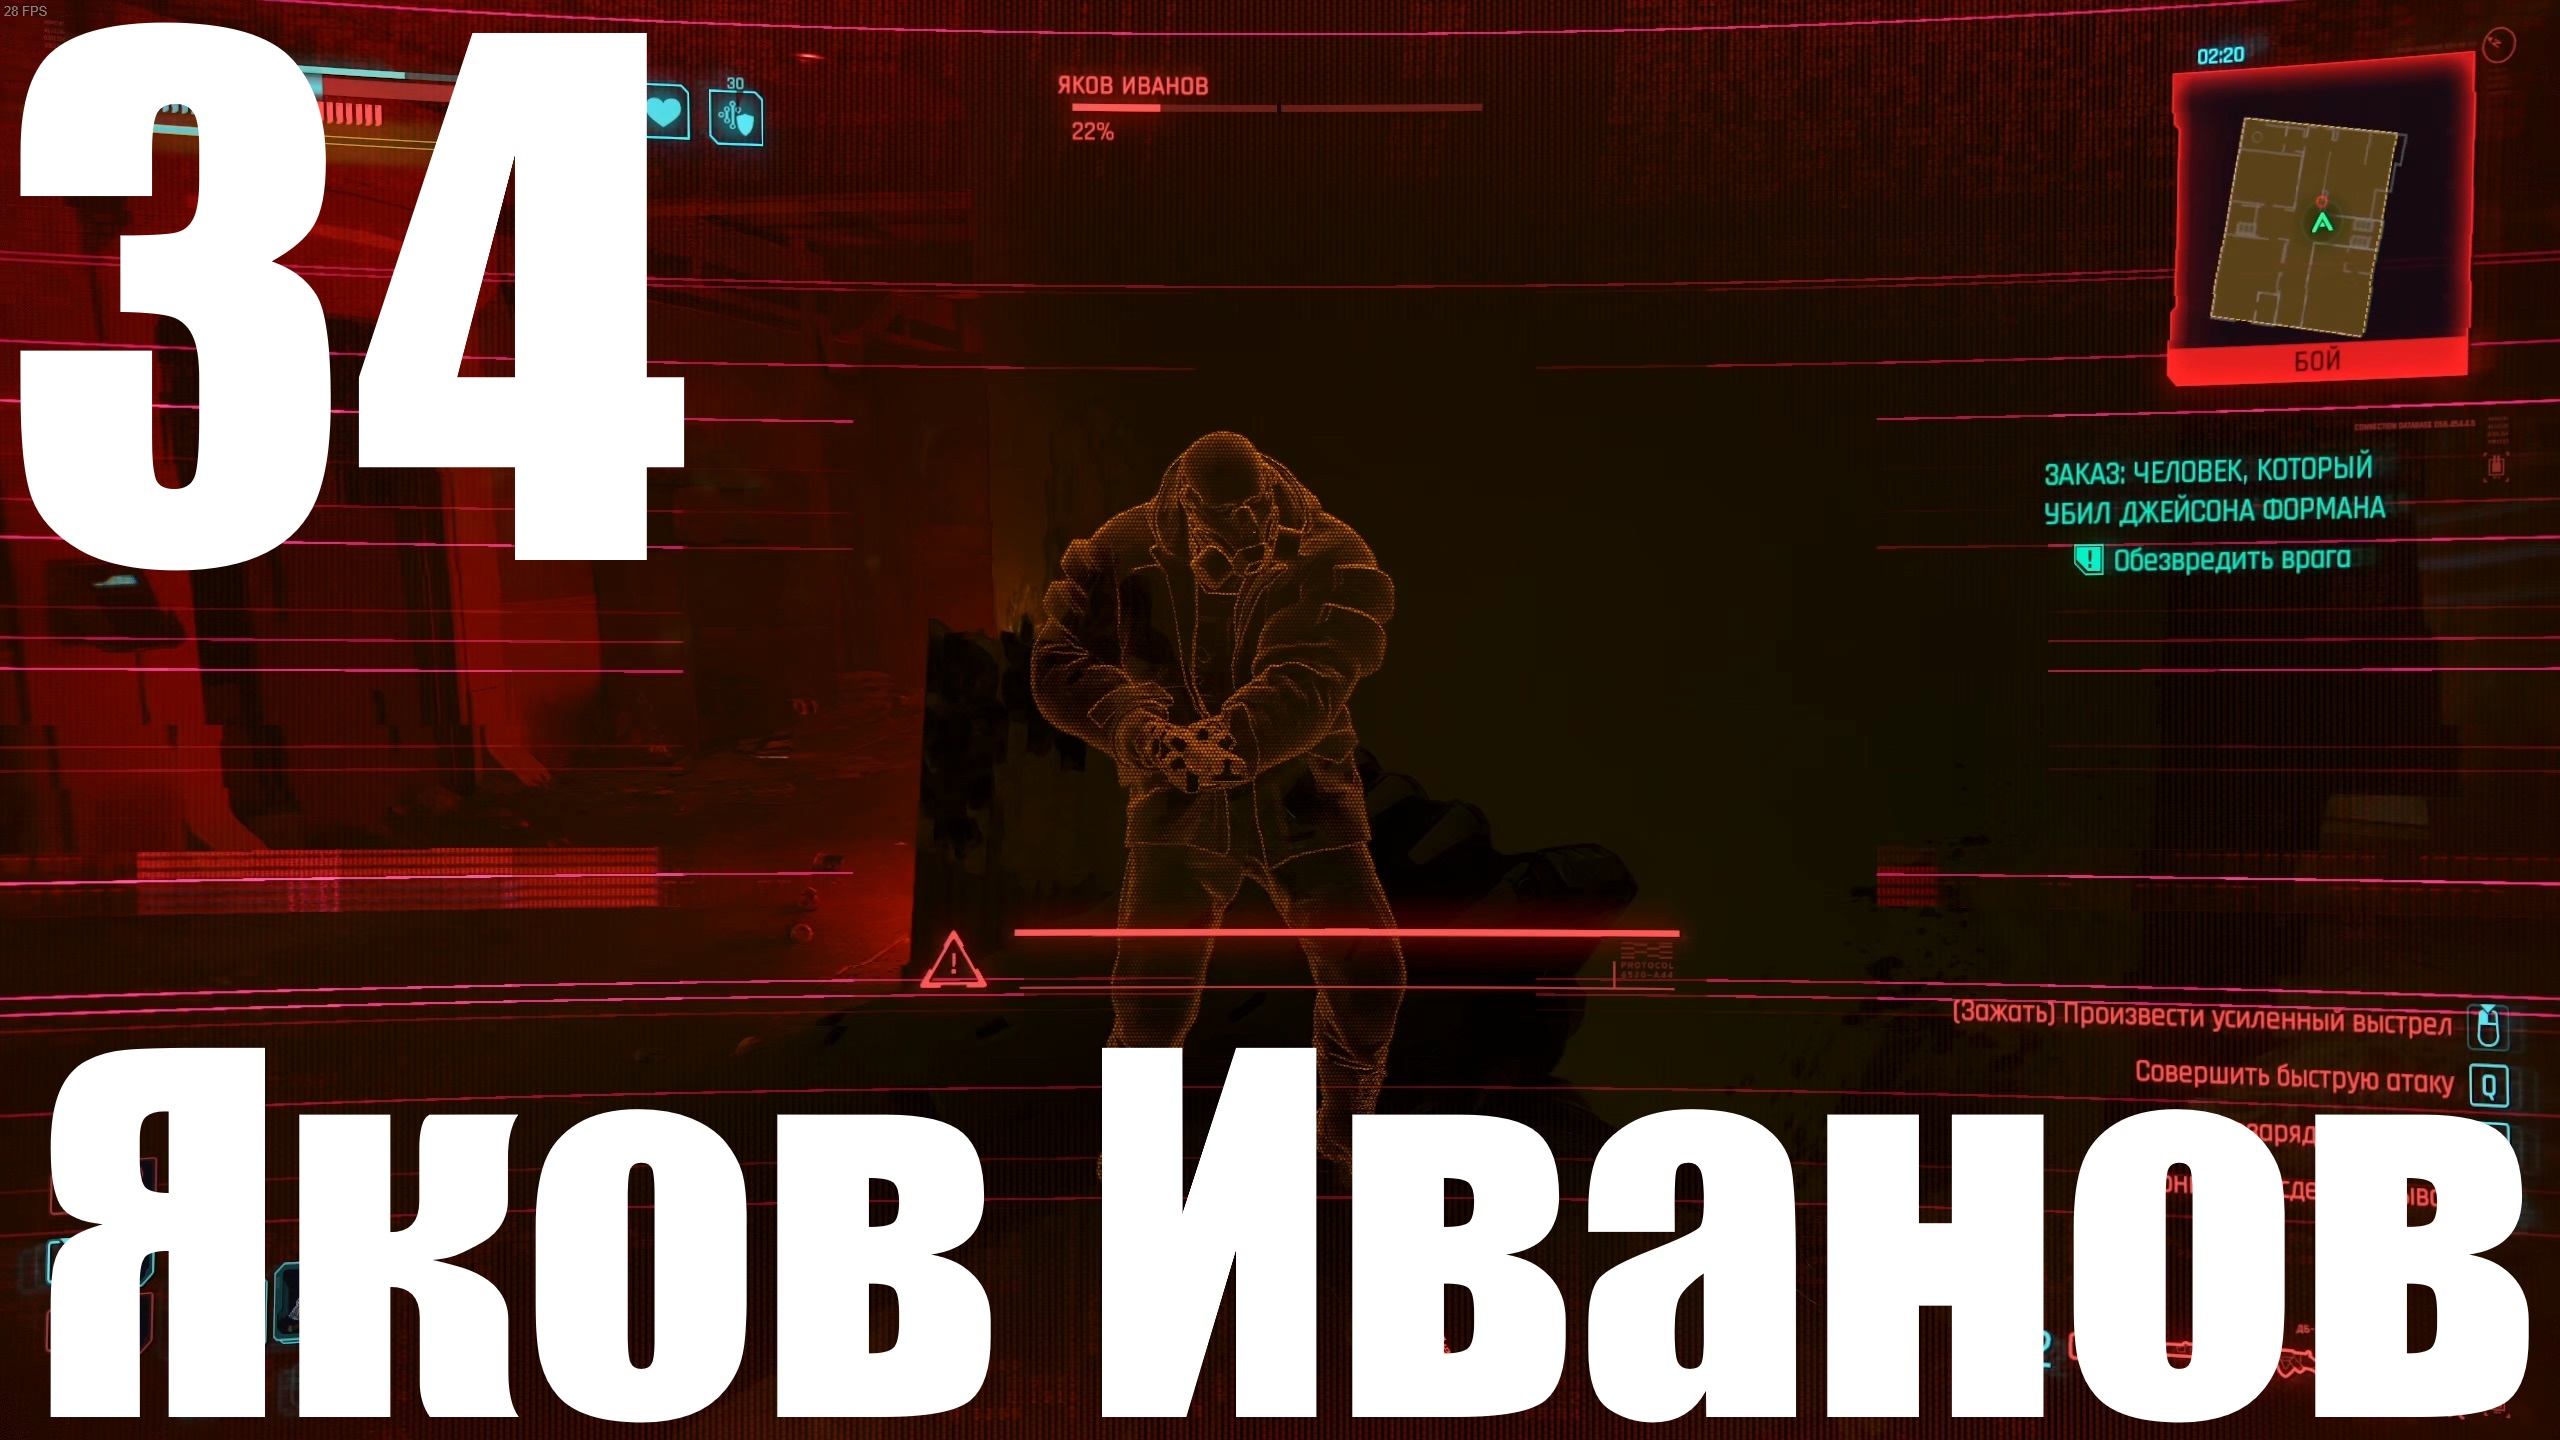 Прохождение игры Cyberpunk 2077 2.0 №34 - Призрачная свобода - Яков Иванов